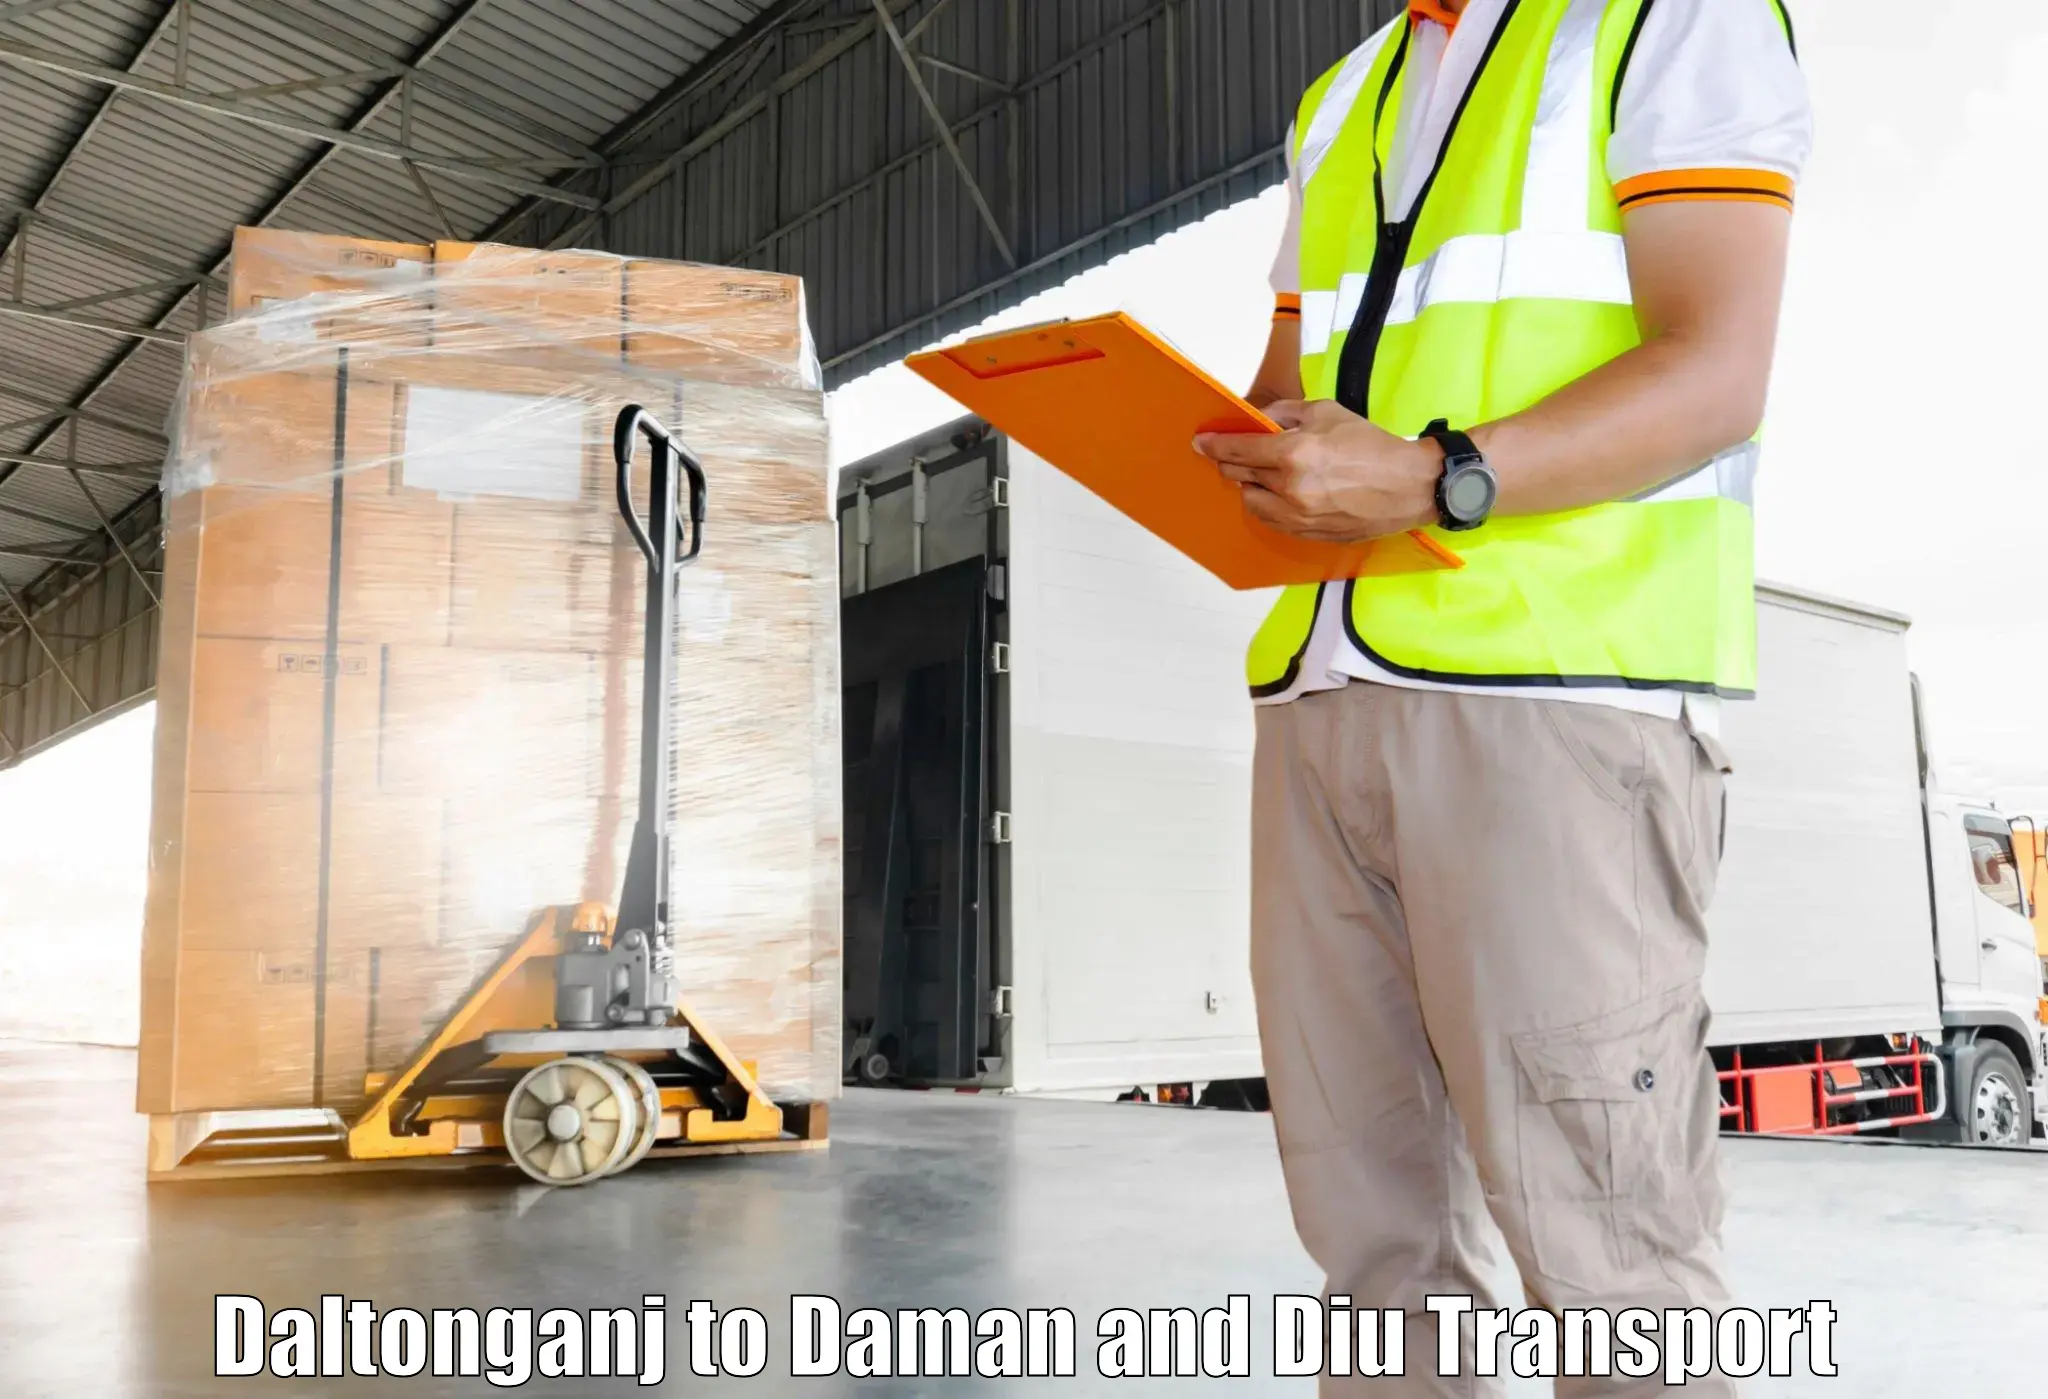 Daily parcel service transport in Daltonganj to Diu